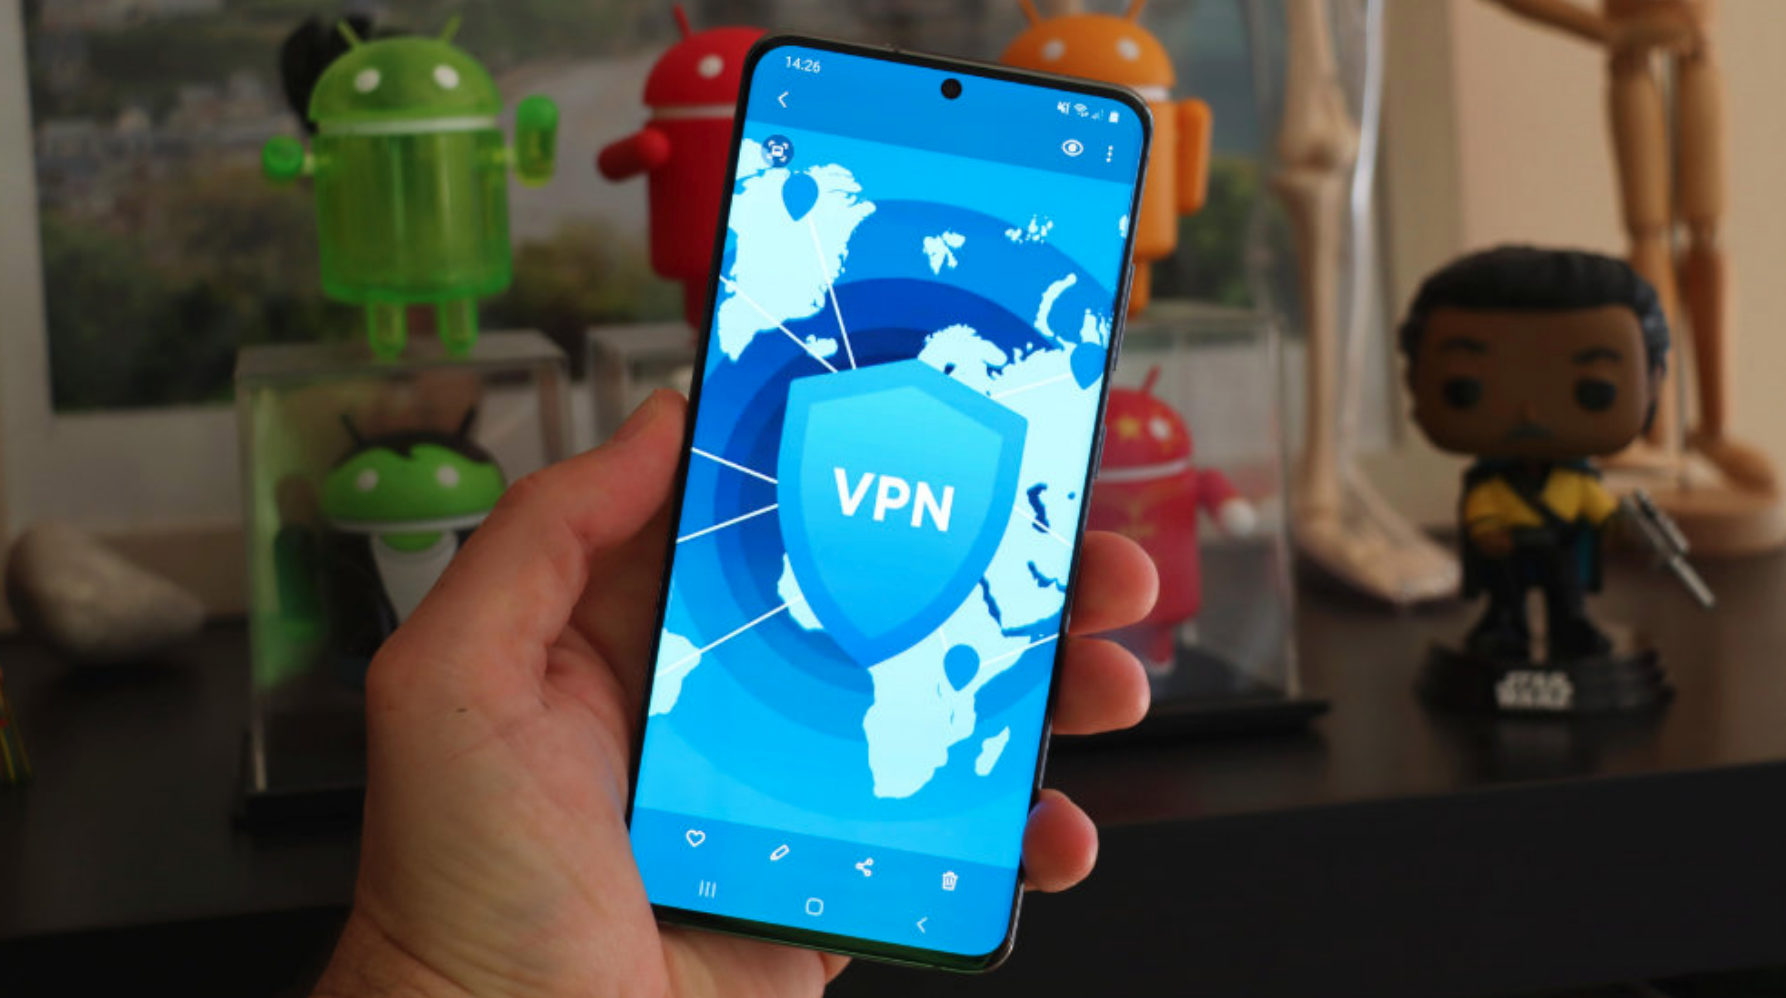 Le VPN est-il vraiment indispensable ?